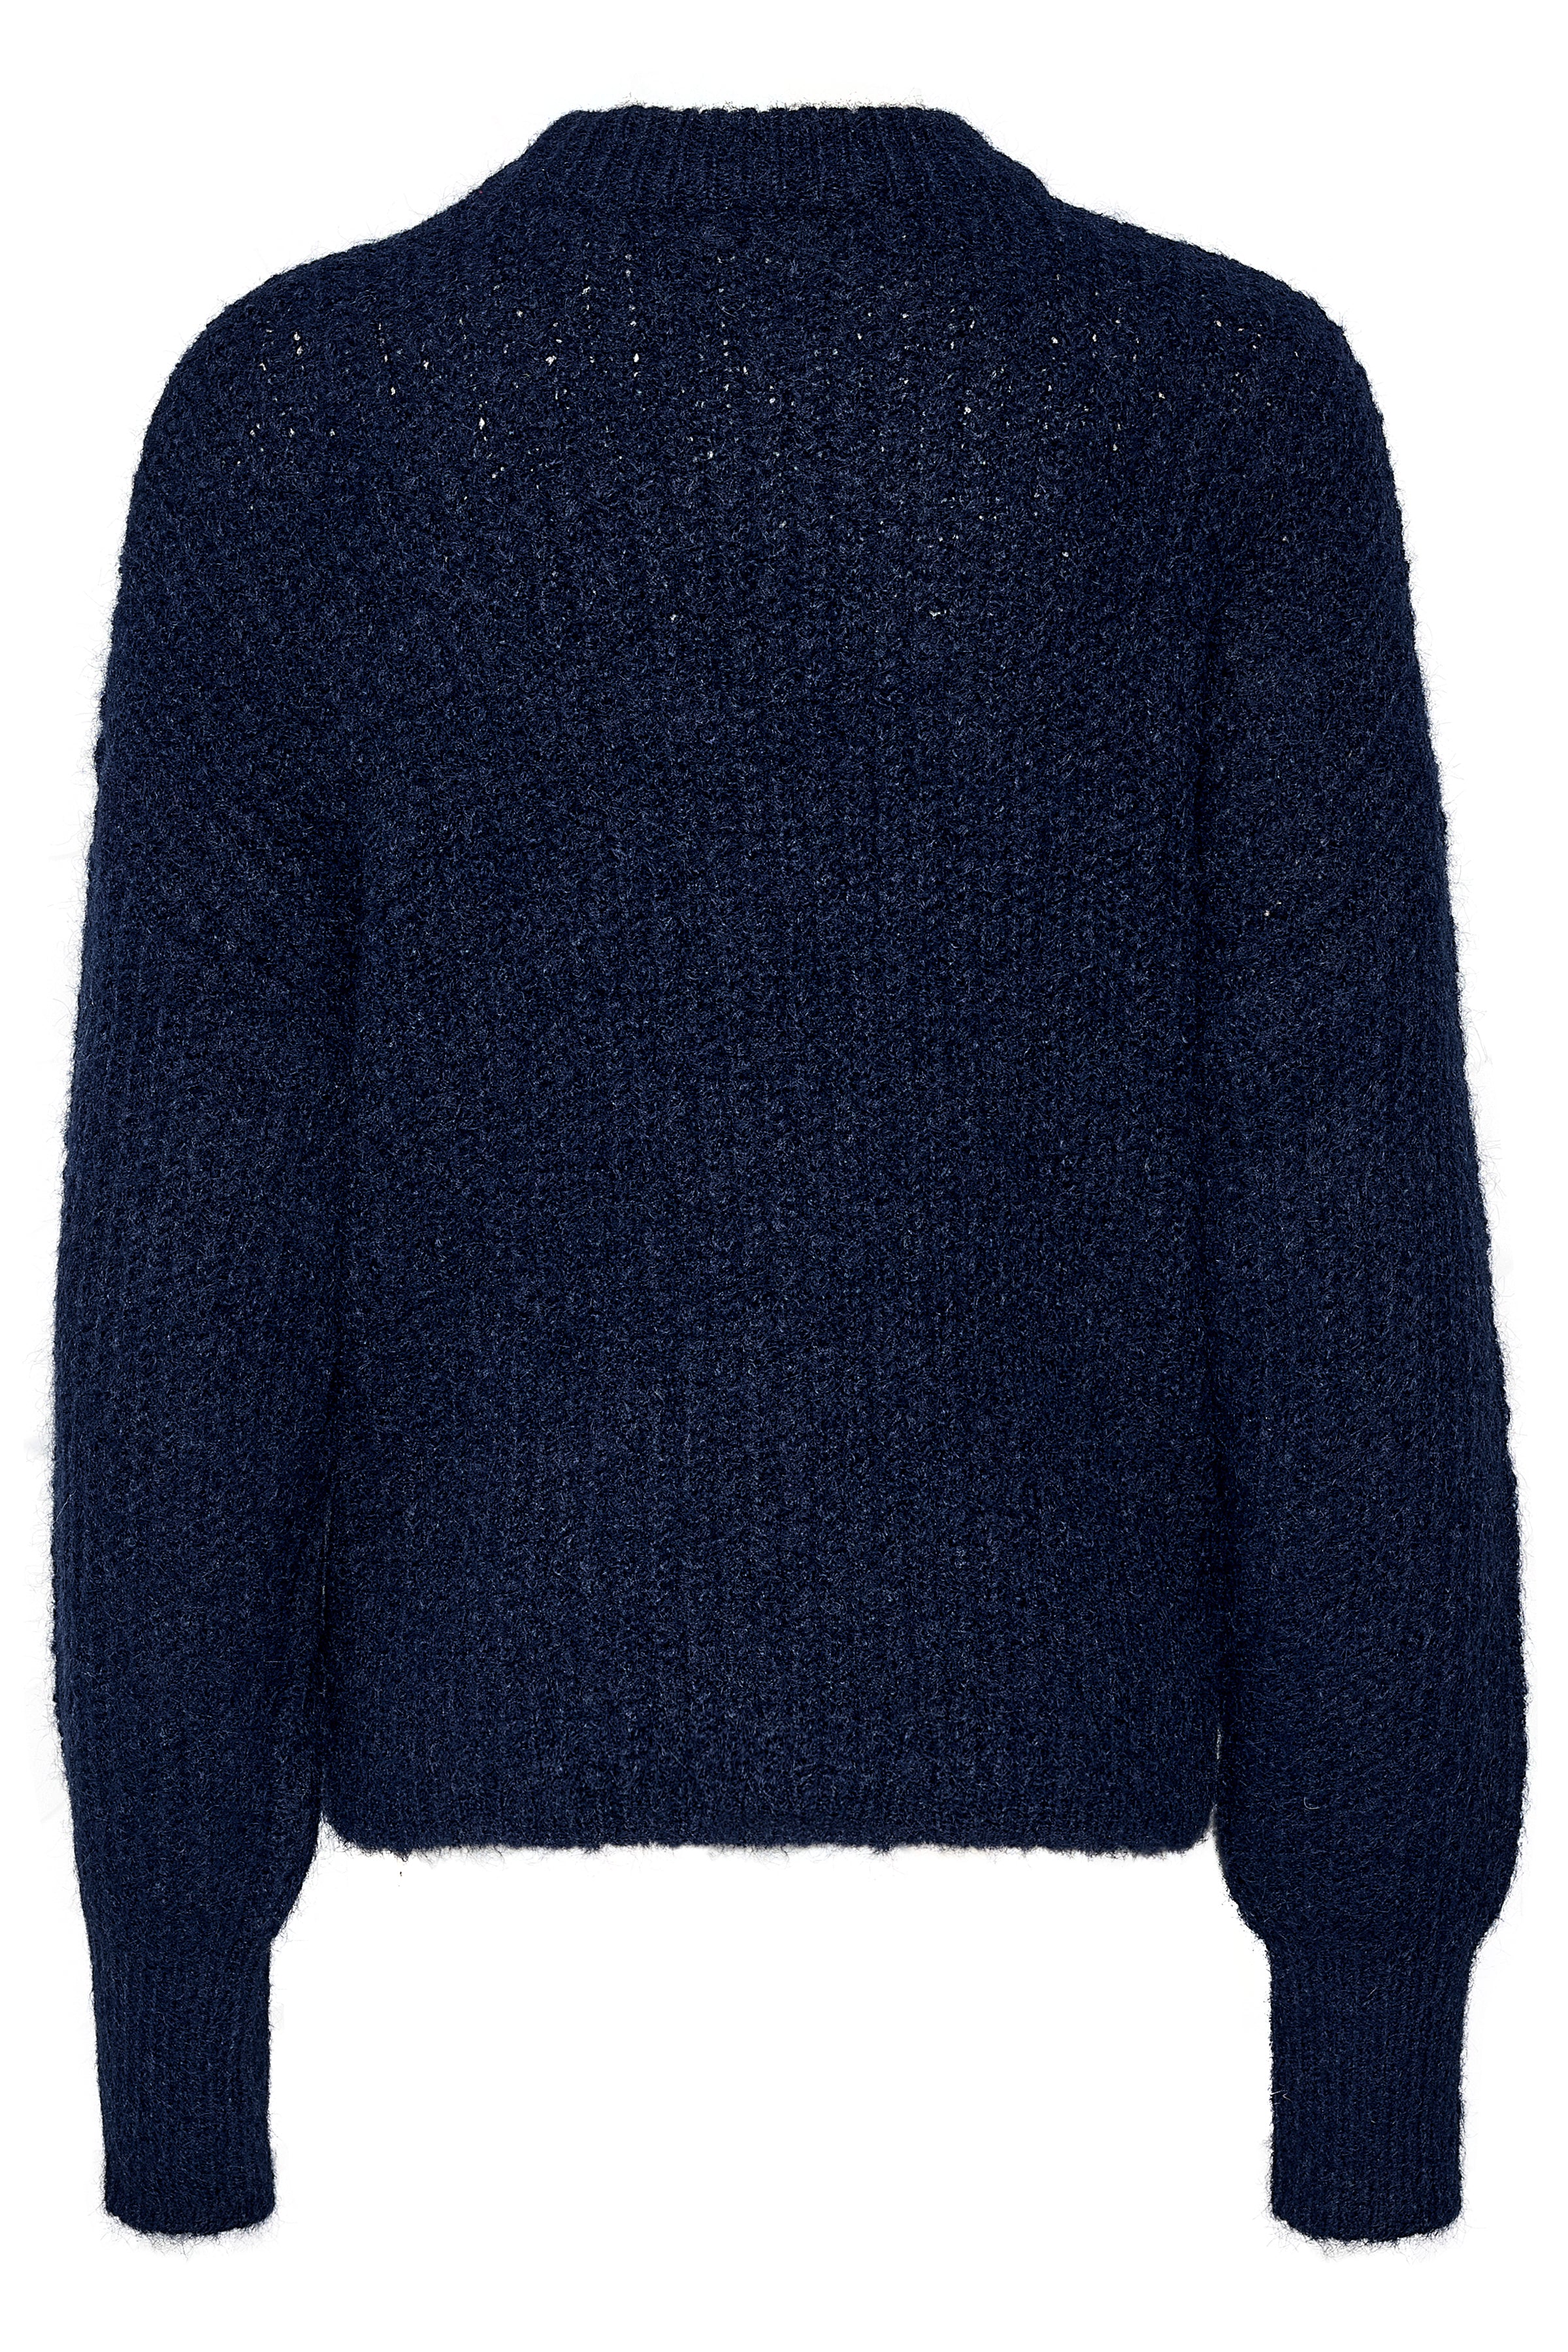 KAmira knit pullover - midnight melange